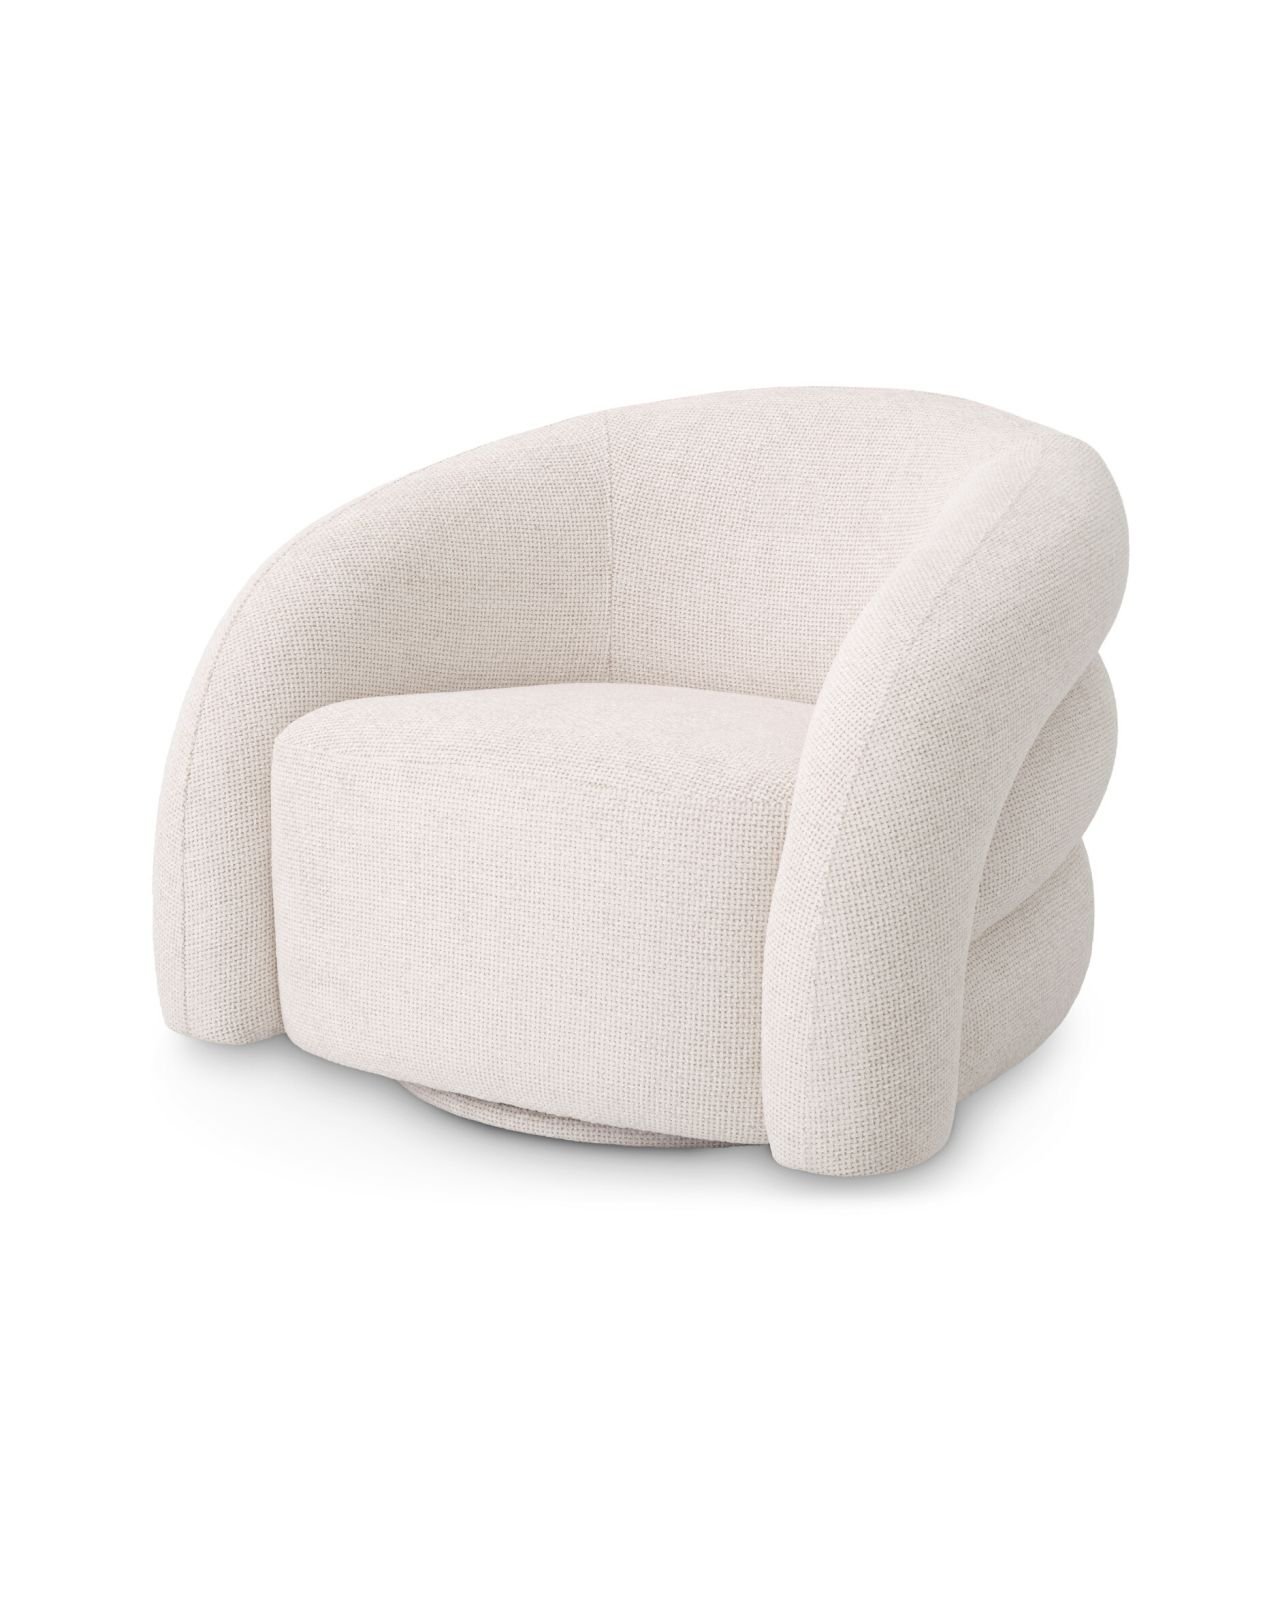 Novelle Swivel Chair lyssa off-white